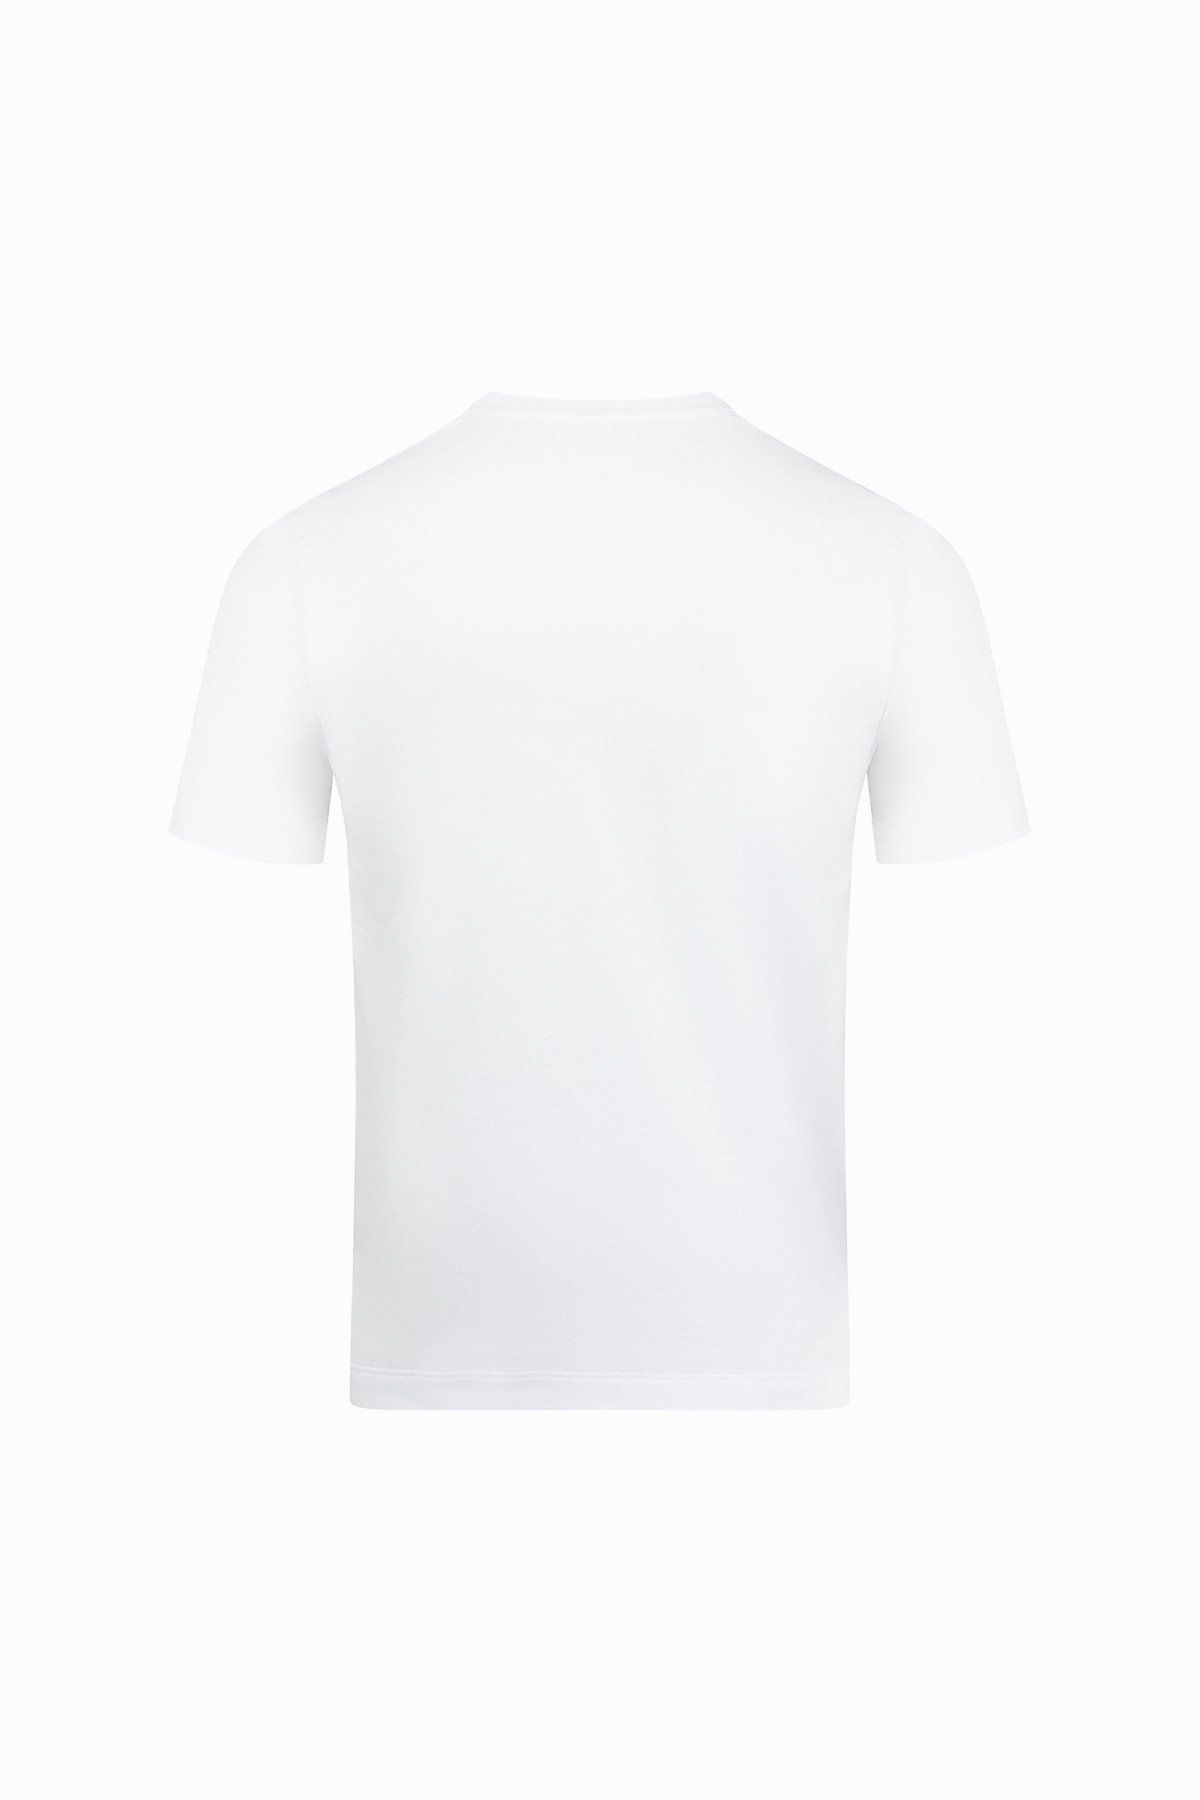 White T-shirt, 